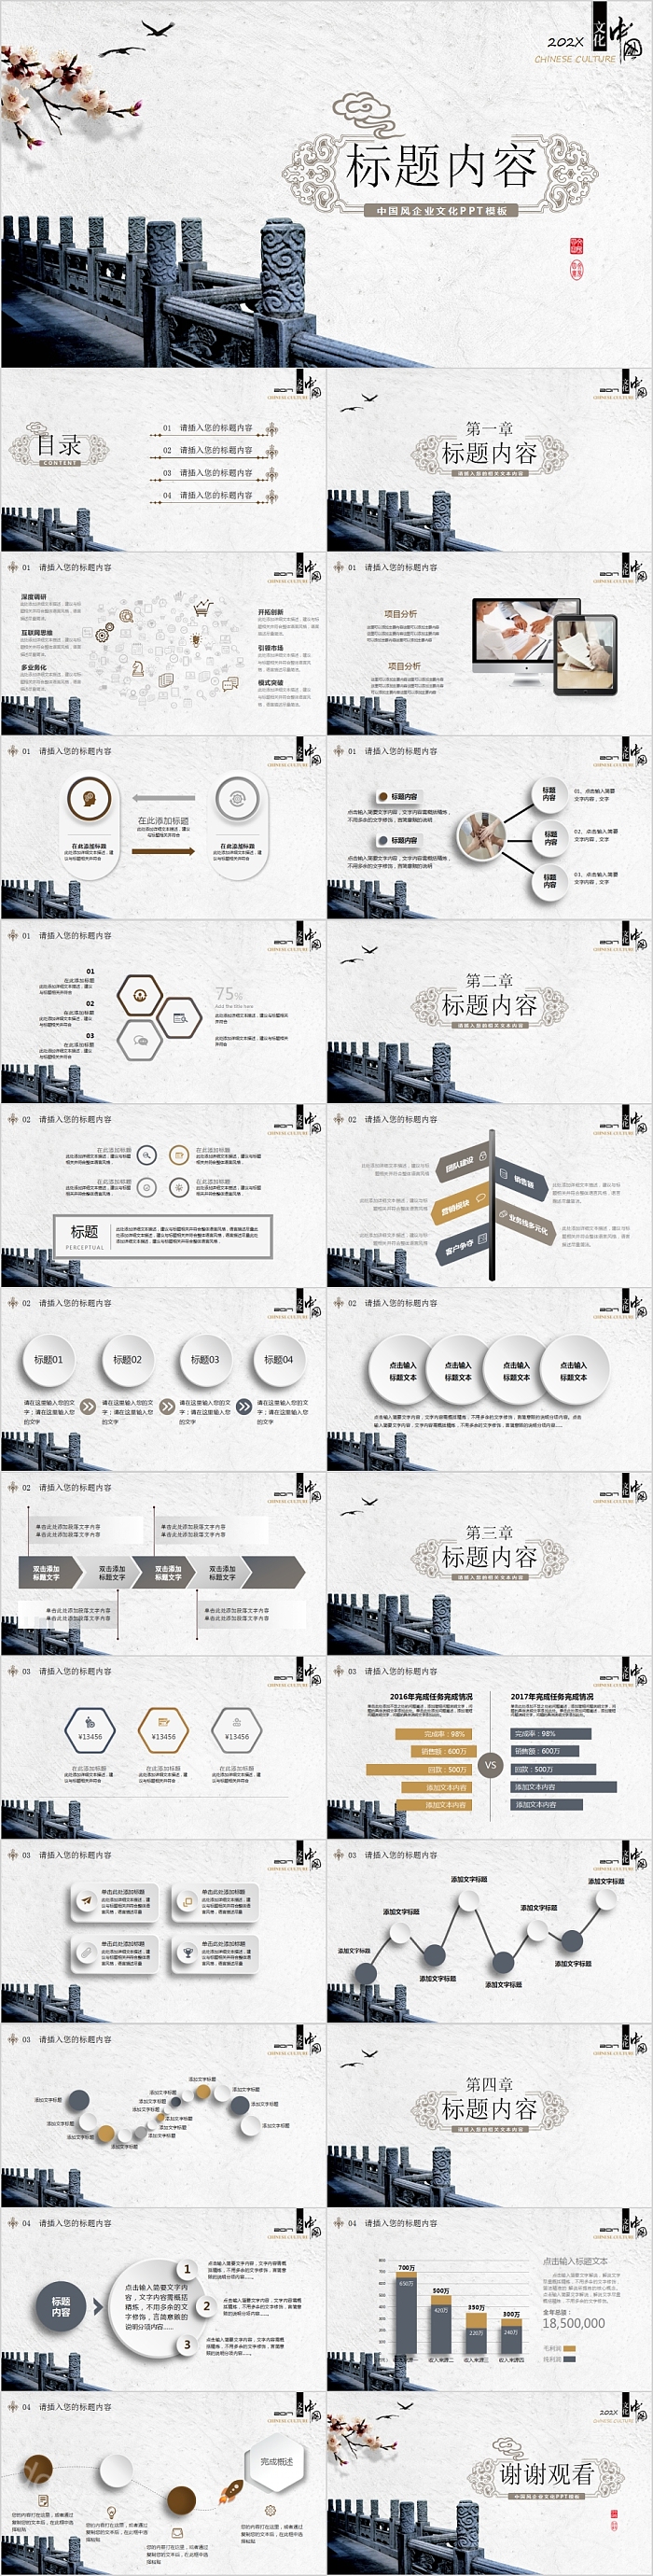 简约中国风企业文化PPT模板